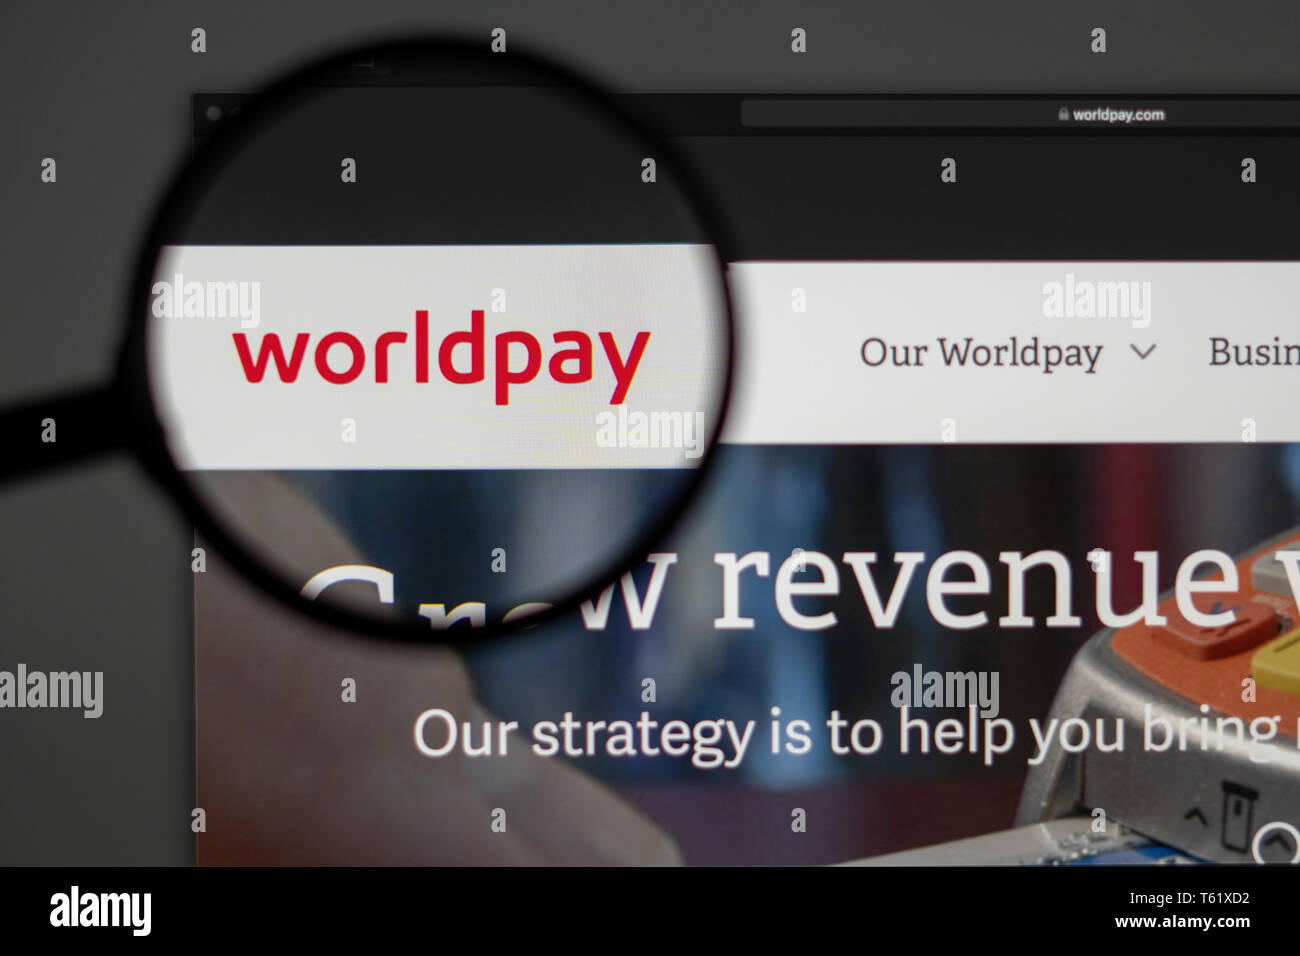 Worldpay Startseite. Nahaufnahme von Worldpay Logo. Kann als illustrative für Medien, Marketing oder Business Konzept verwendet werden. Stockfoto